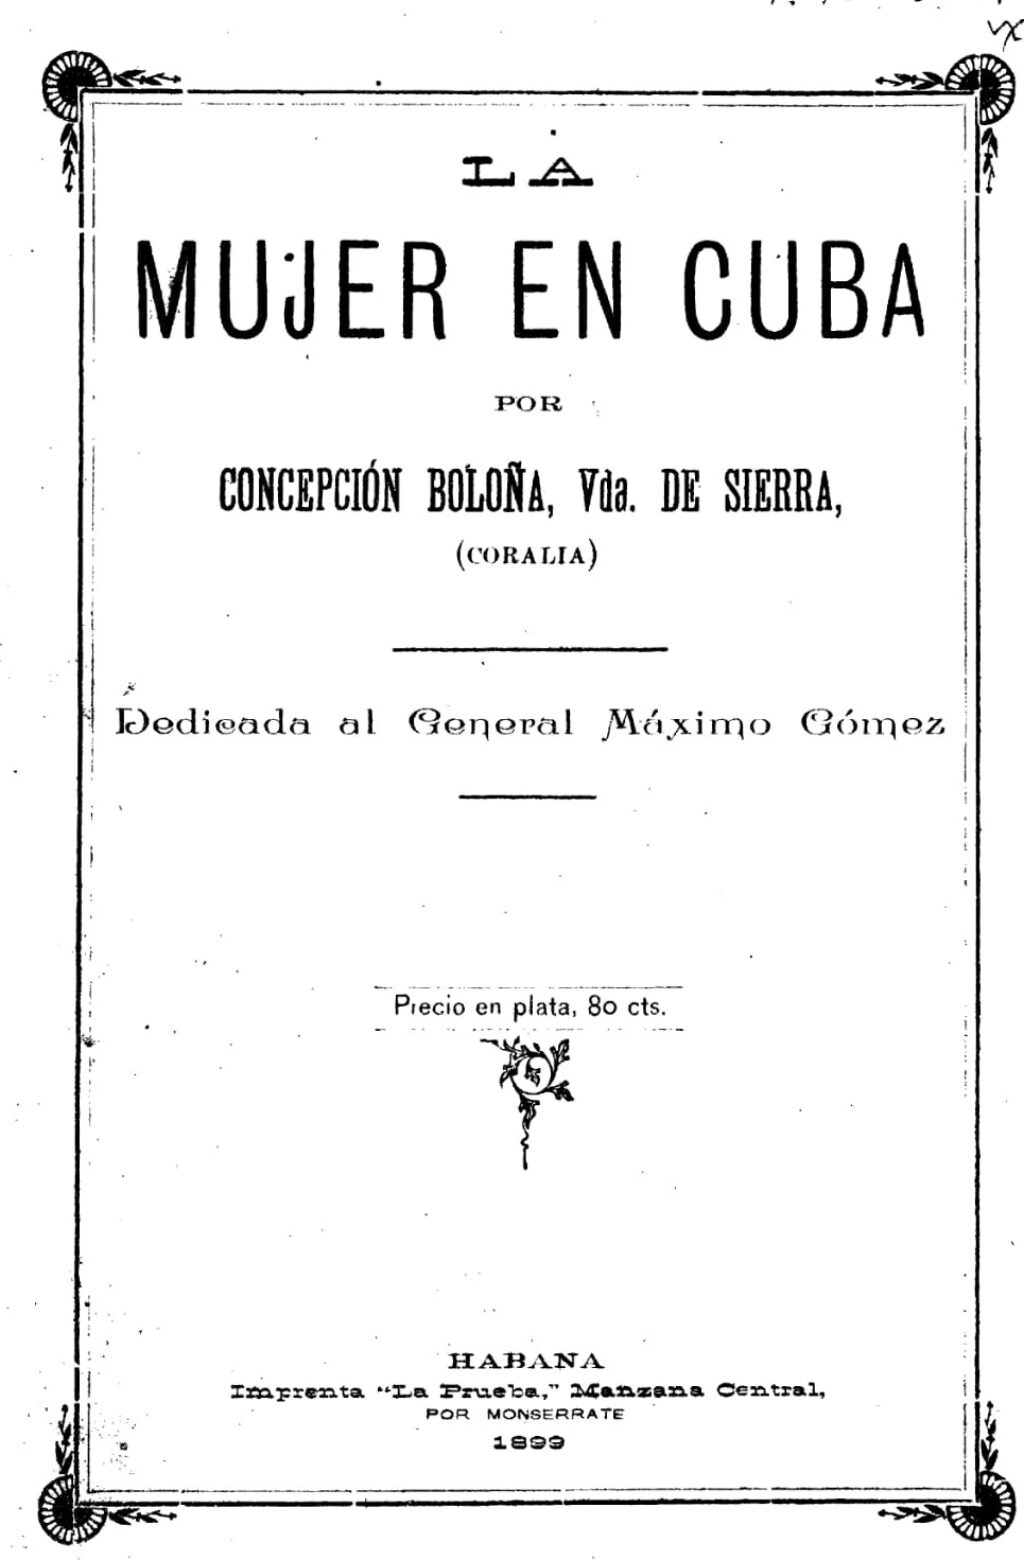 Portada de "La mujer en Cuba", libro de Concepción Boloña (Seudónimo: Coralia), publicado en La Habana en 1899.